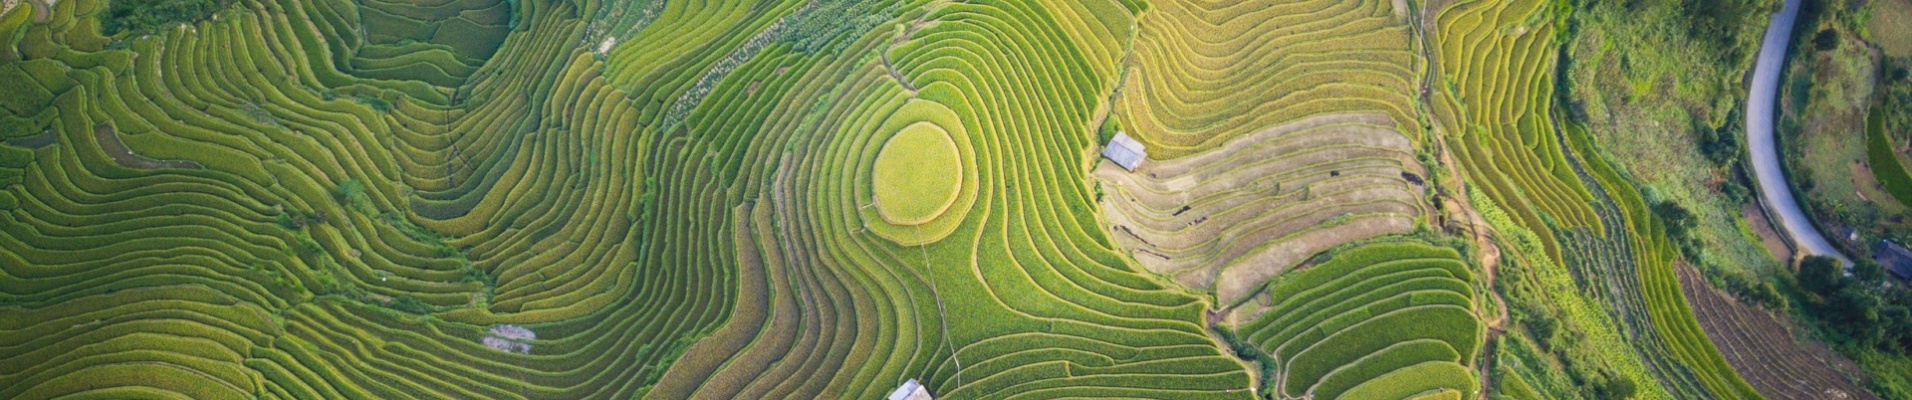 Vue aérienne des rizières, Vietnam